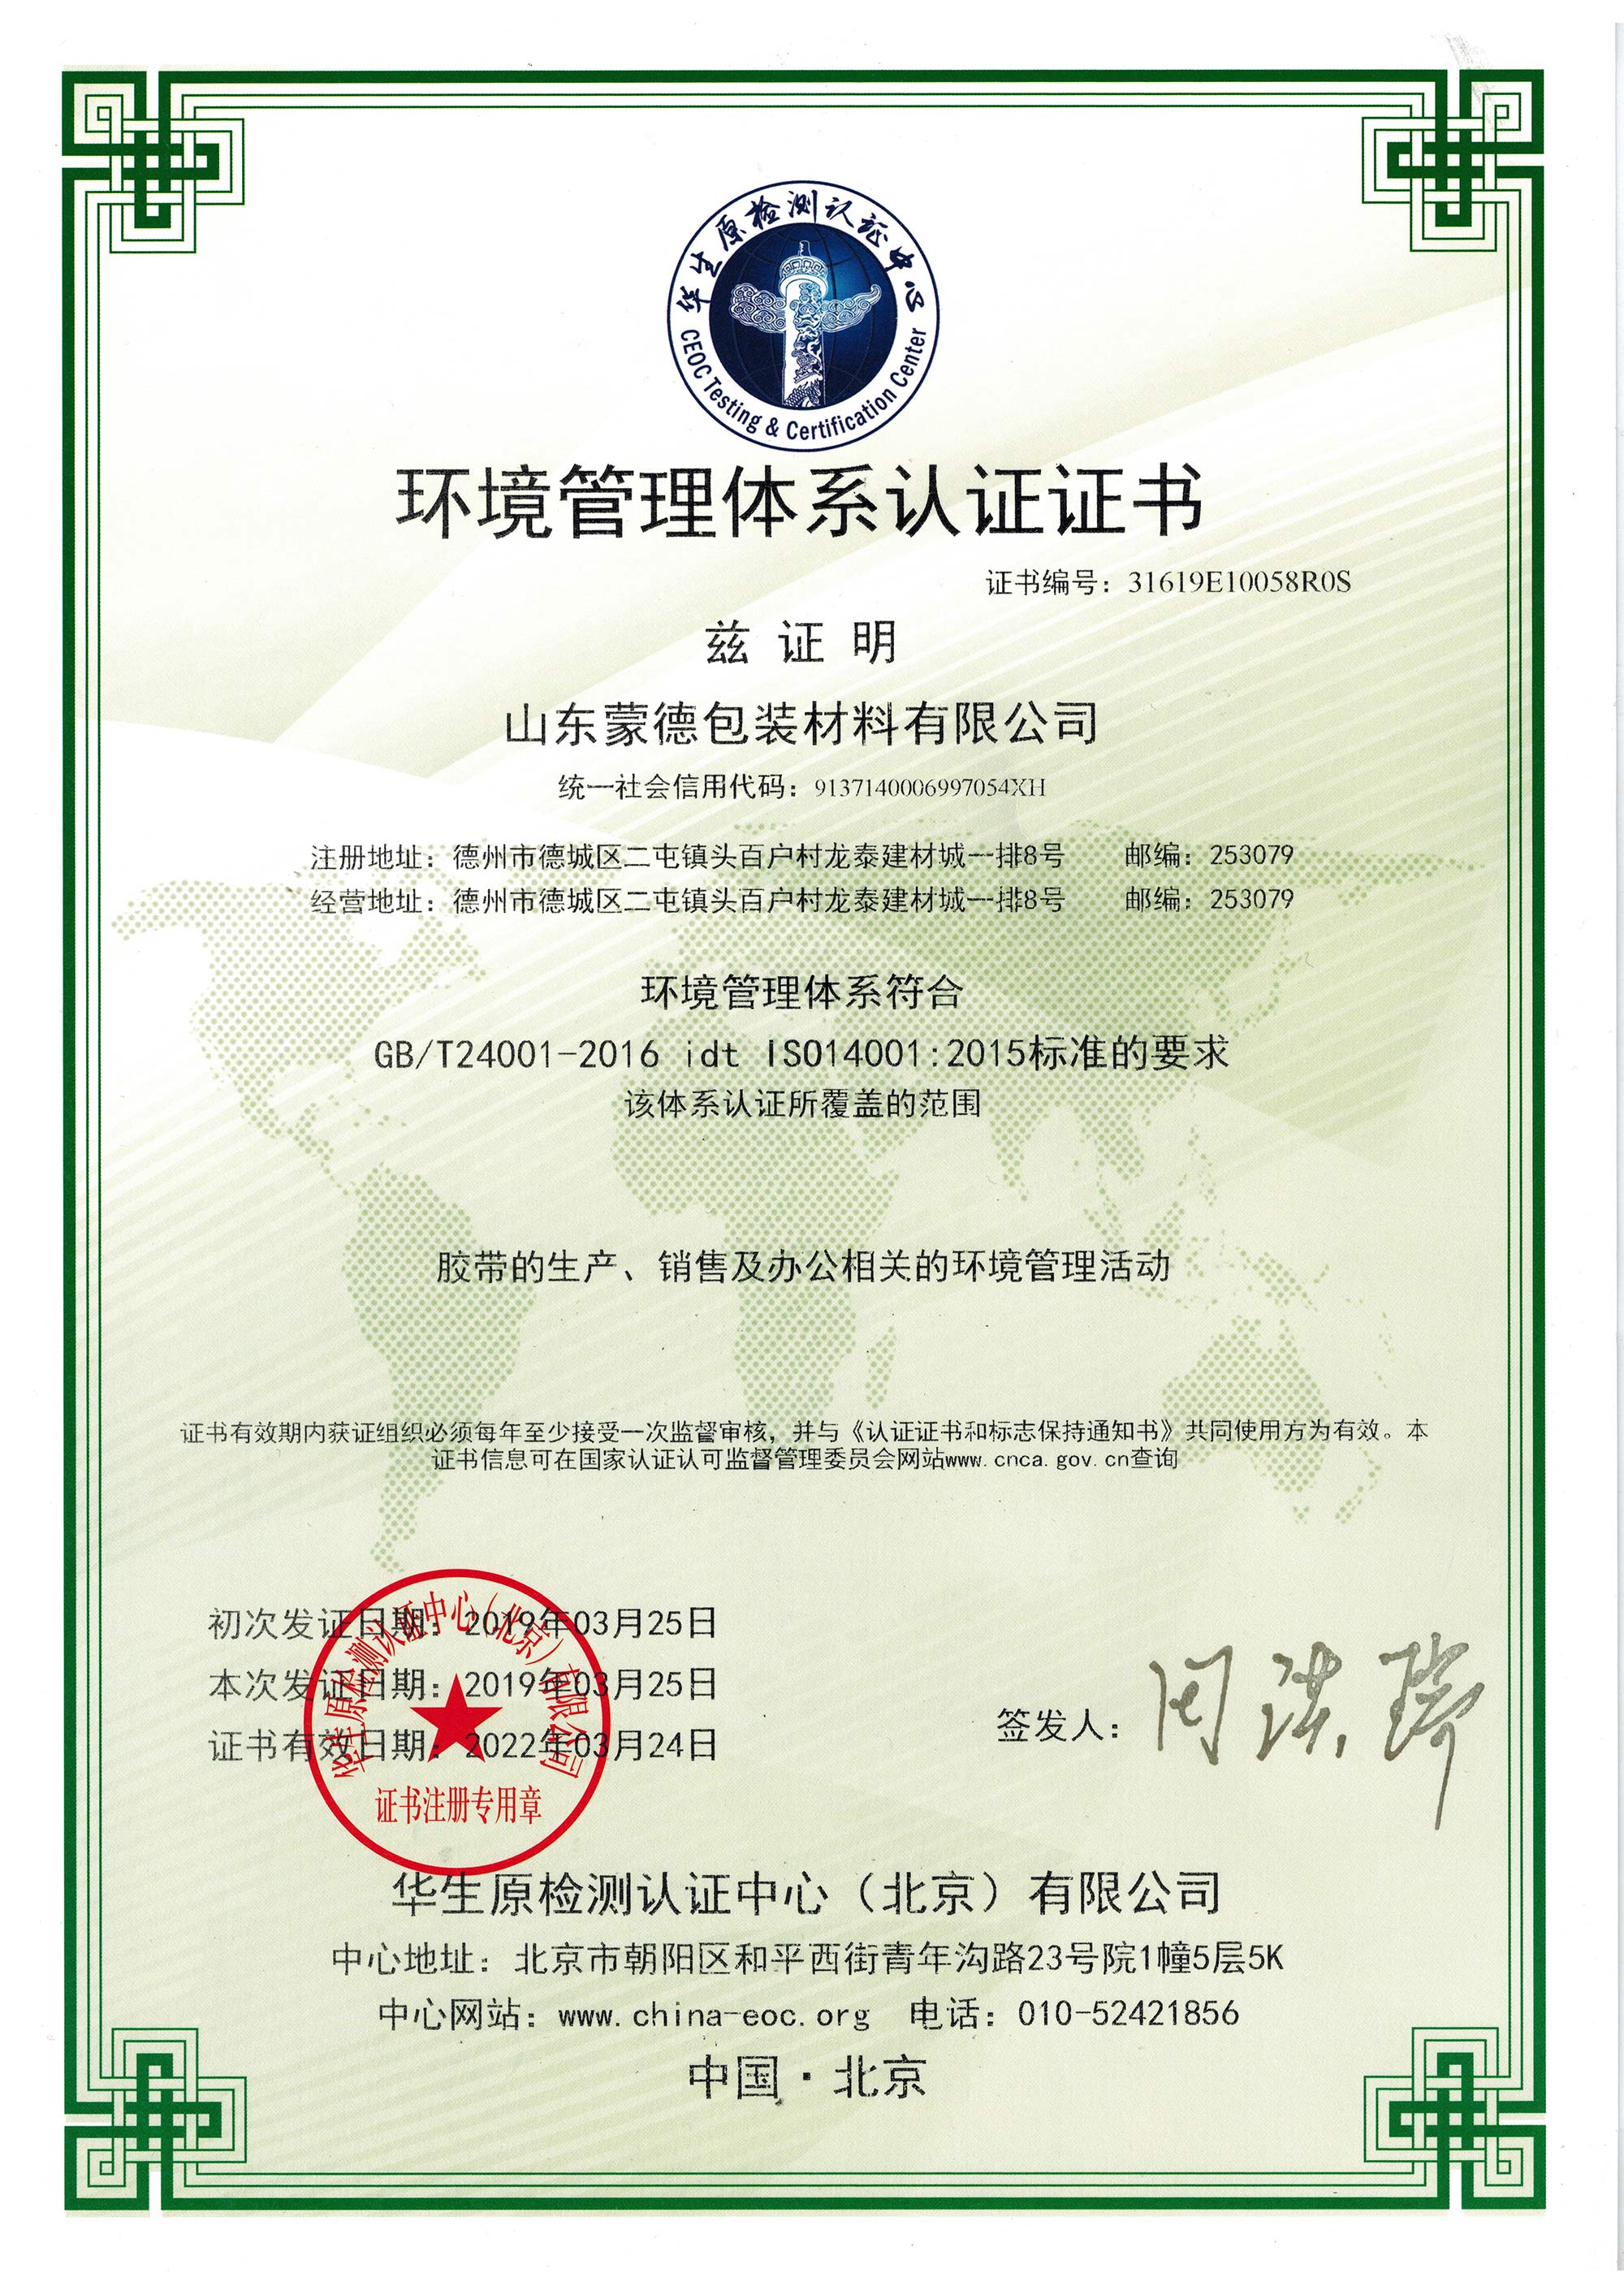 熱烈慶祝蒙德膠帶順利取得ISO14001環境管理體認證證書